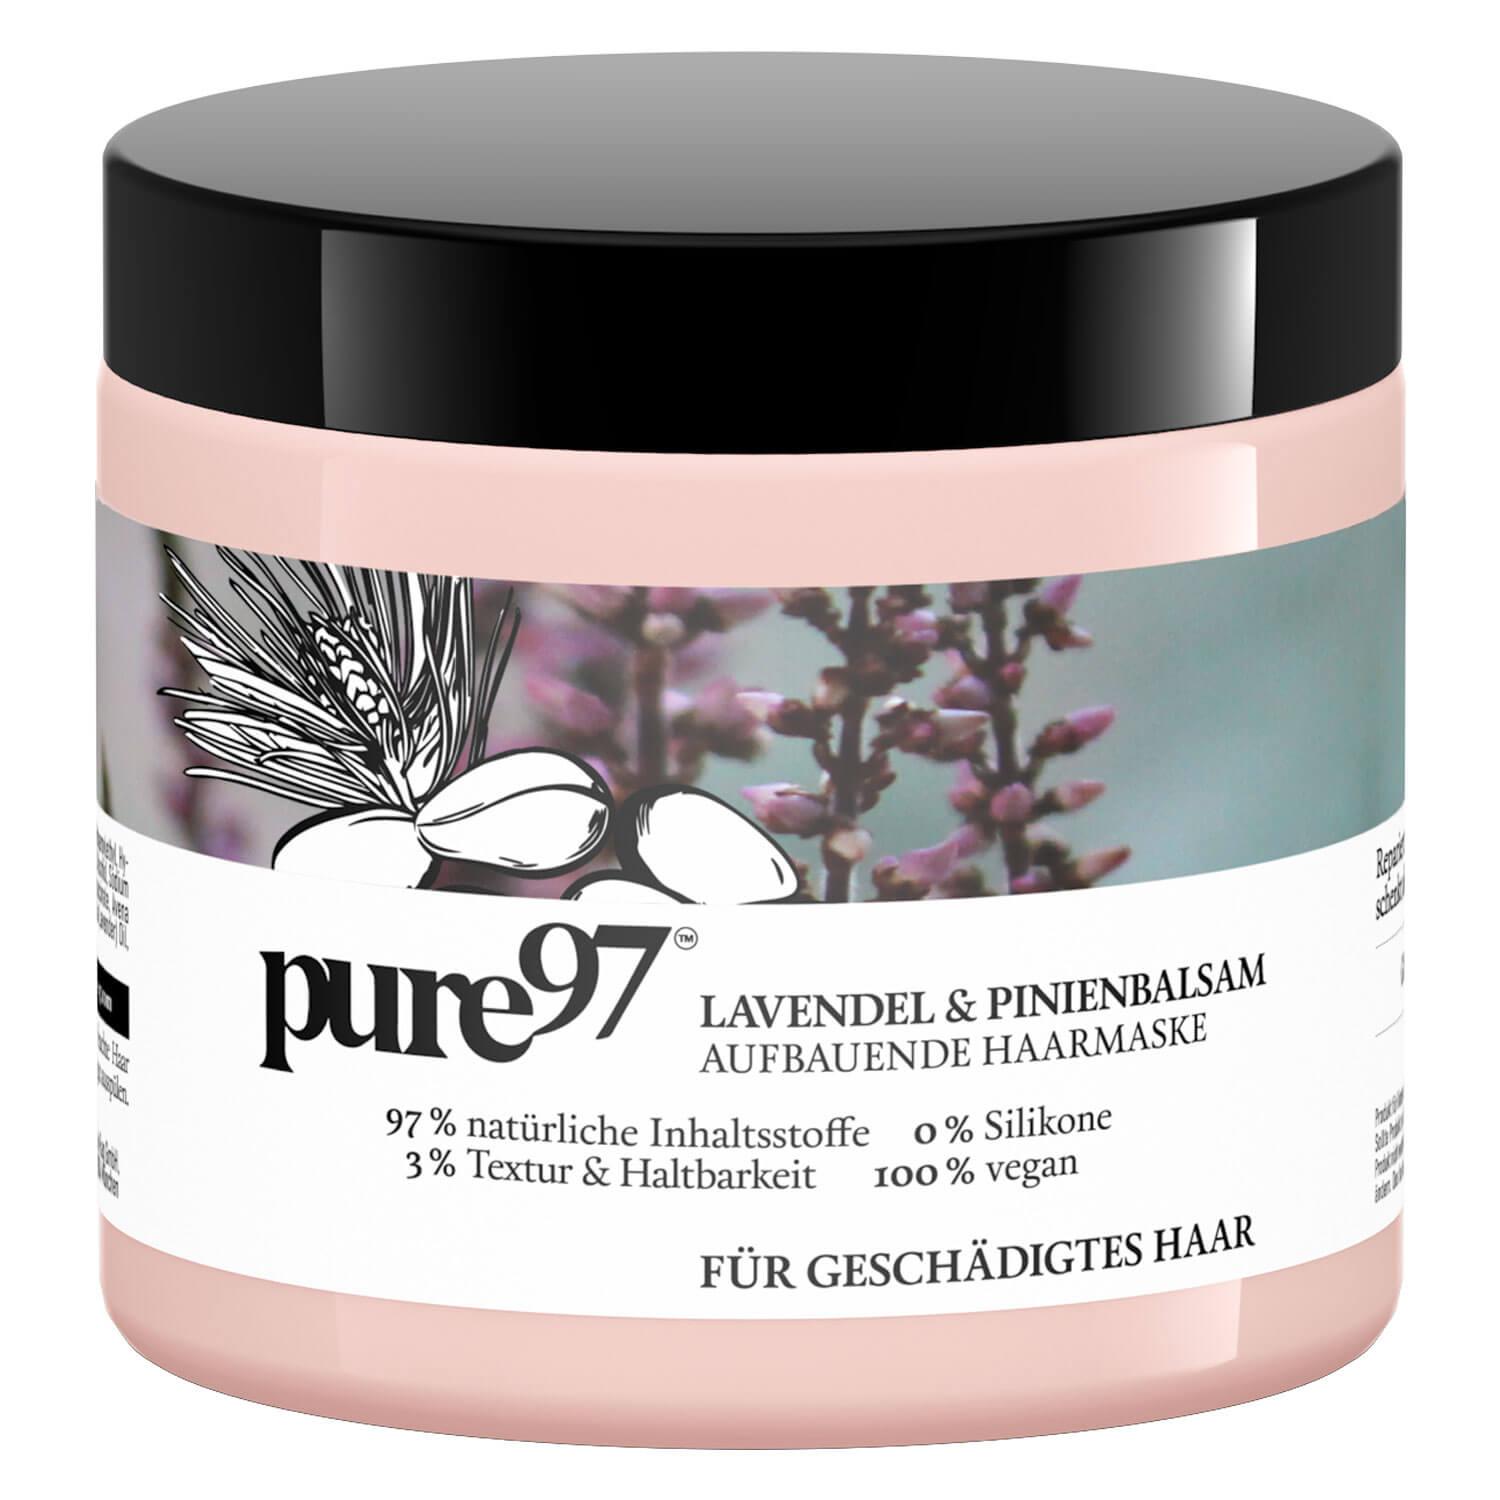 pure97 - Lavendel & Pinienbalsam Haarmaske